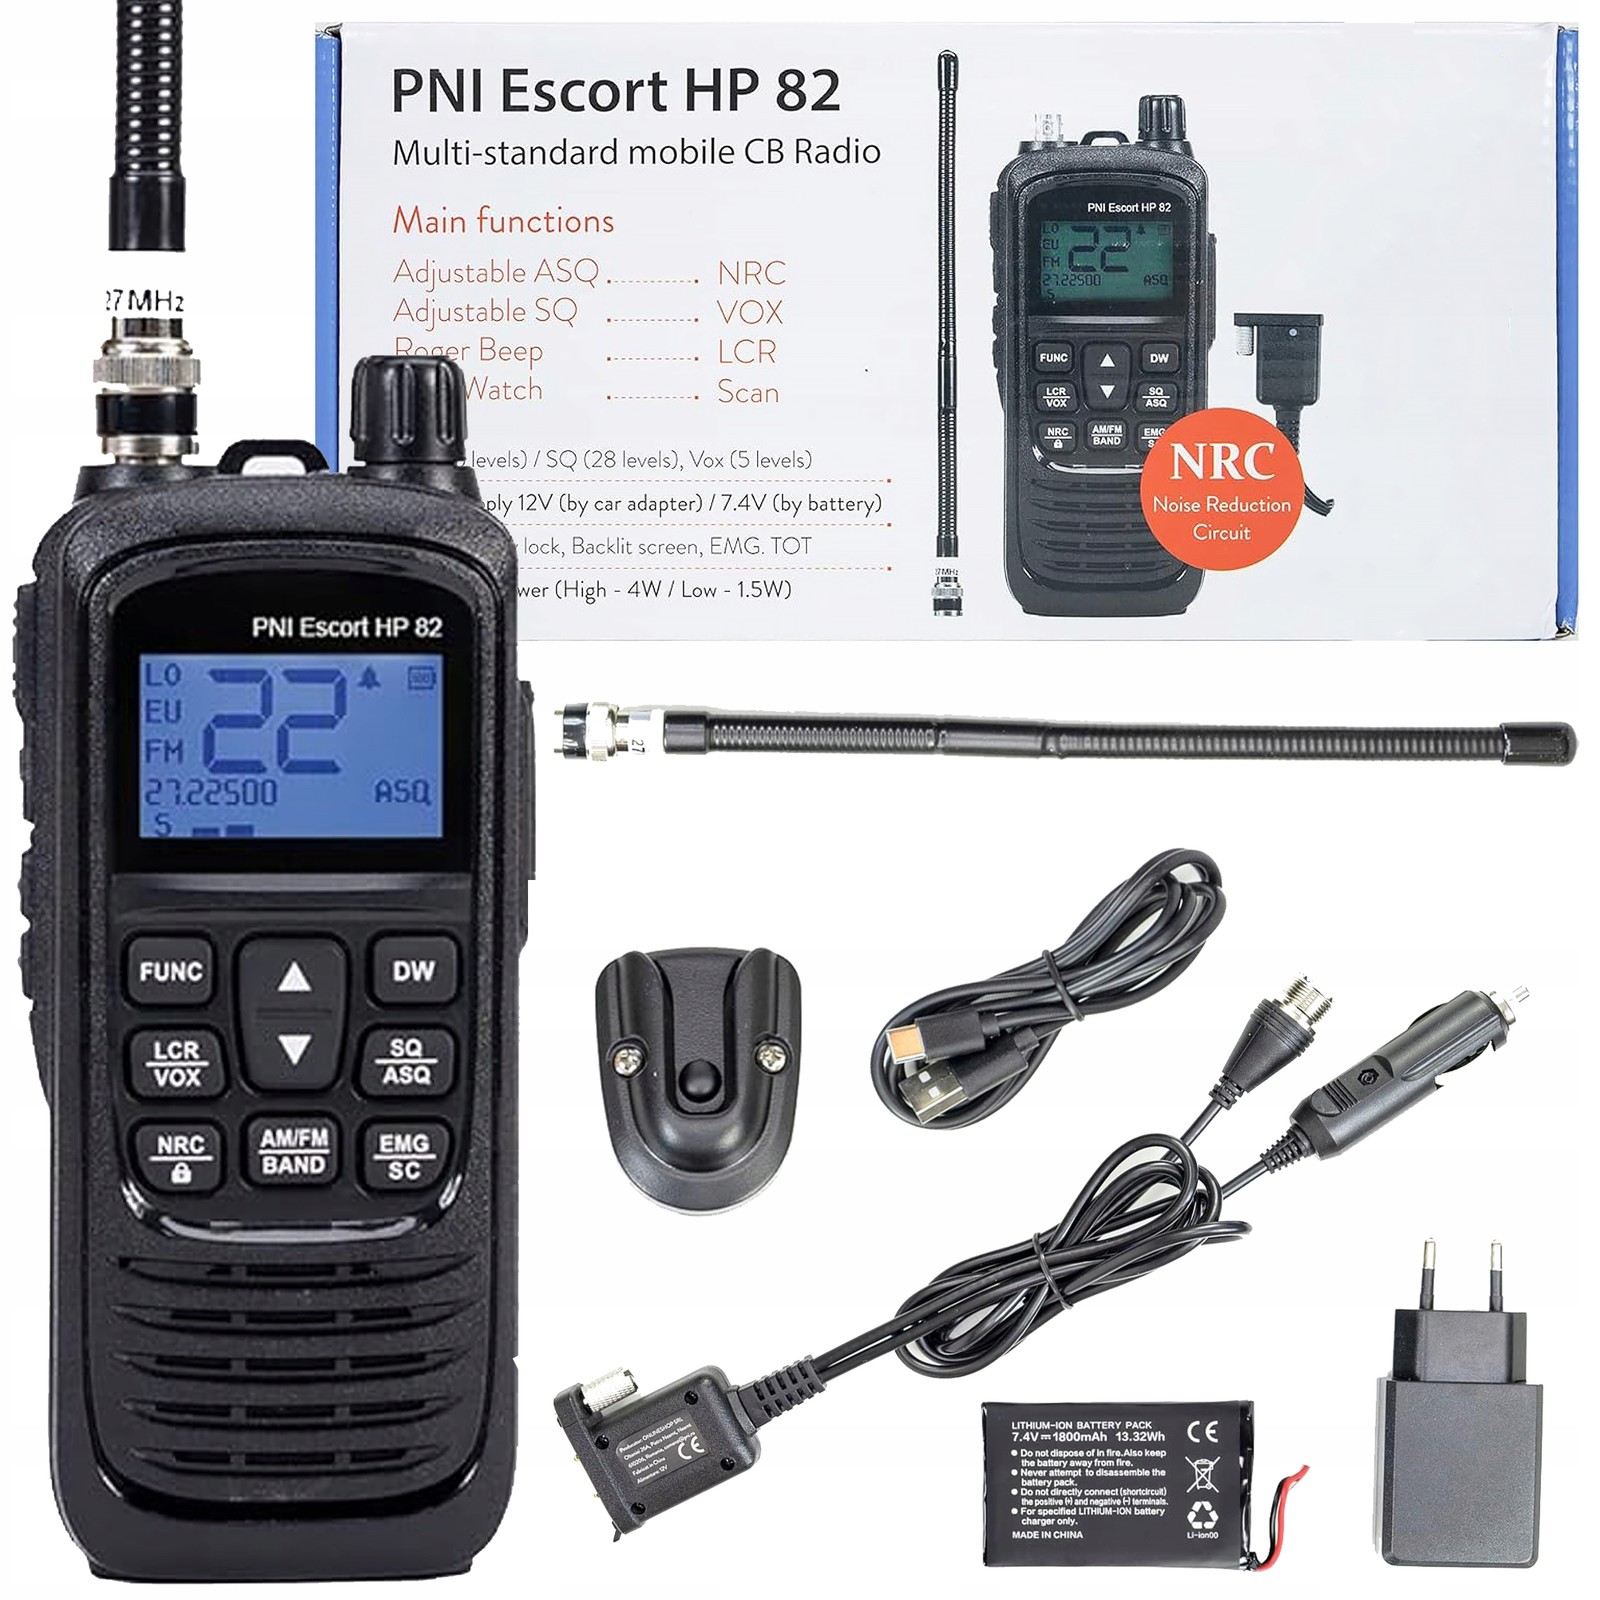 Přenosné Cb ruční rádio Pni Escort Hp 82 baterie 1800mAh Usb-c nabíjení